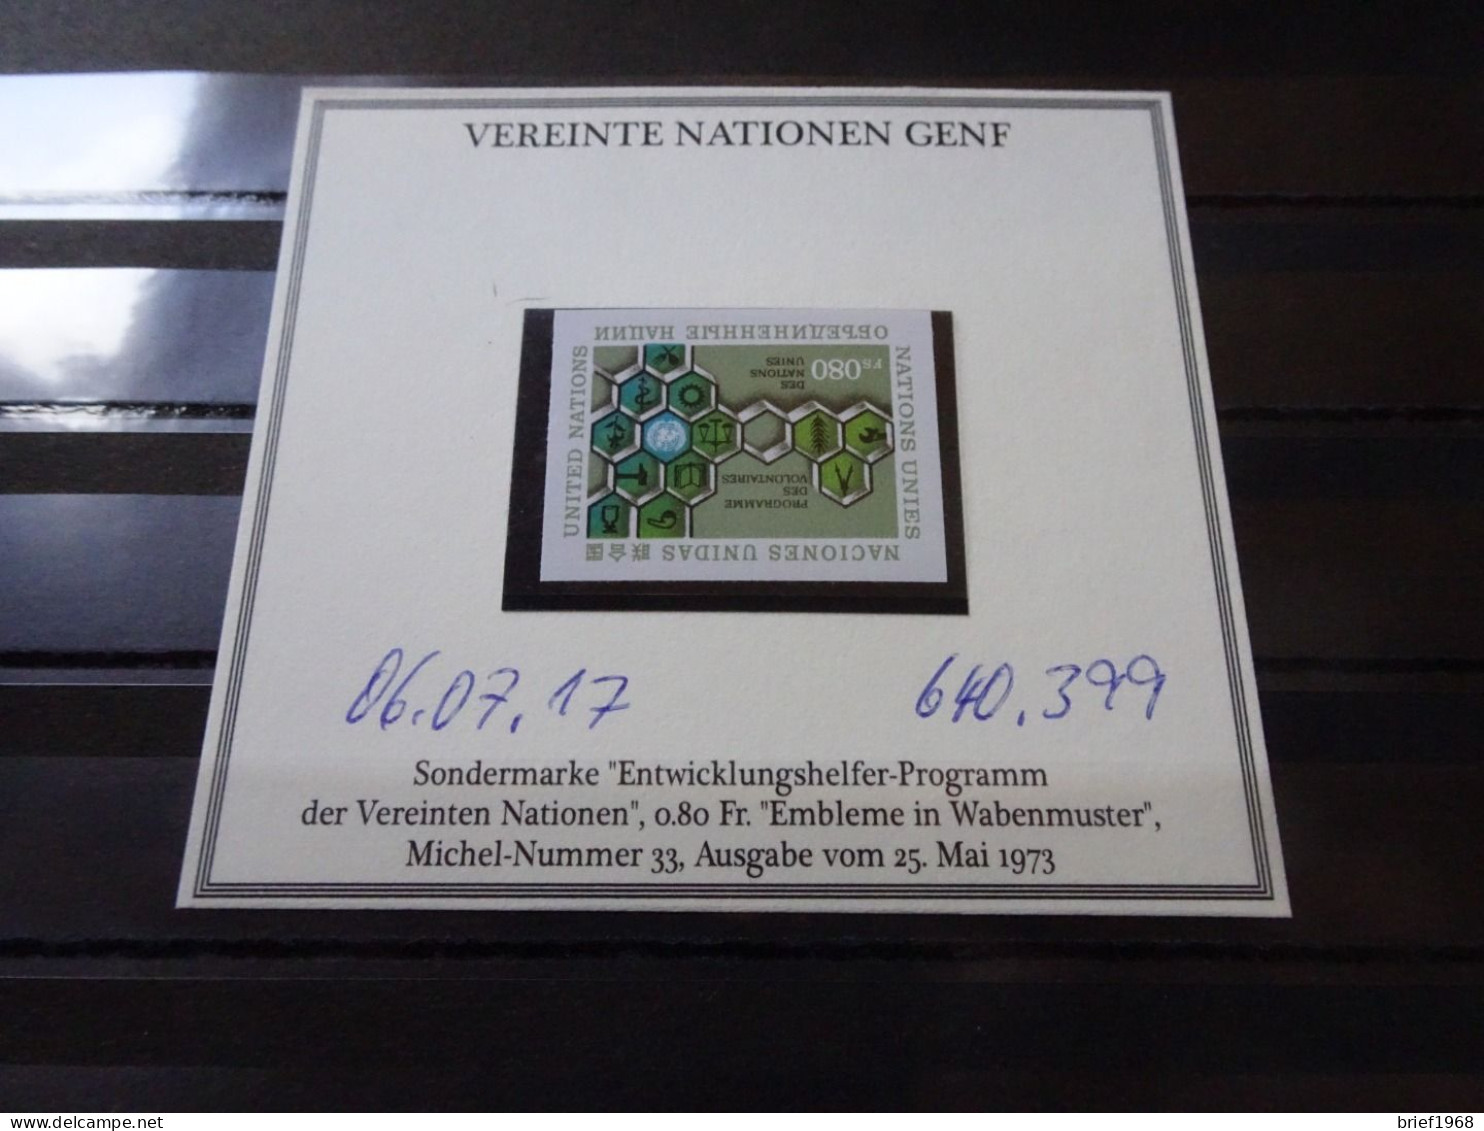 UNO Genf Michel 33U Ungezähnt Postfrisch (20520) - Unused Stamps